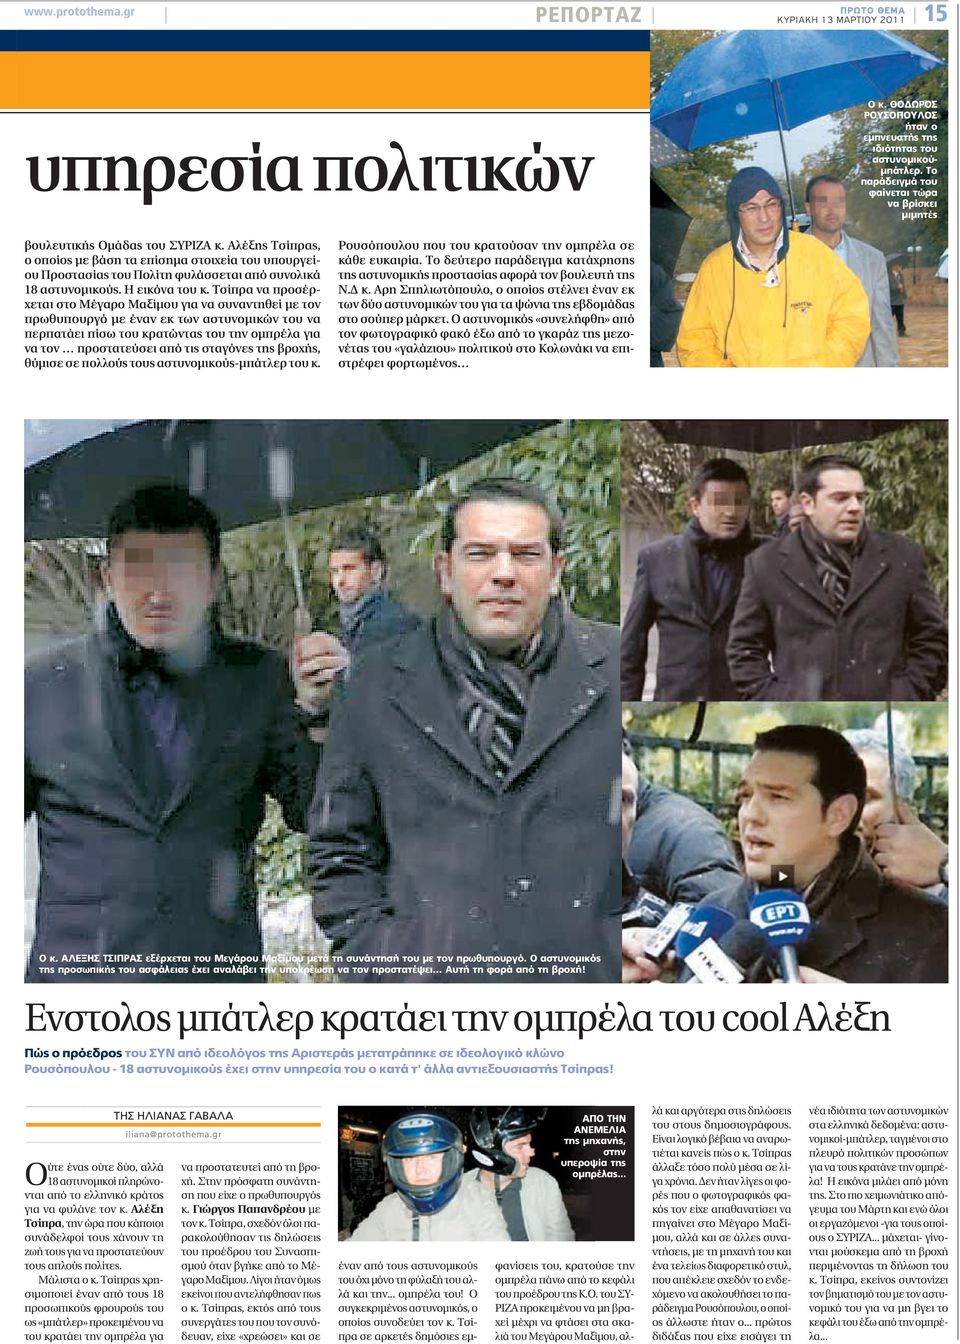 Αλέξης Τσίπρας, ο οποίος με βάση τα επίσημα στοιχεία του υπουργείου Προστασίας του Πολίτη φυλάσσεται από συνολικά 18 αστυνομικούς. Η εικόνα του κ.